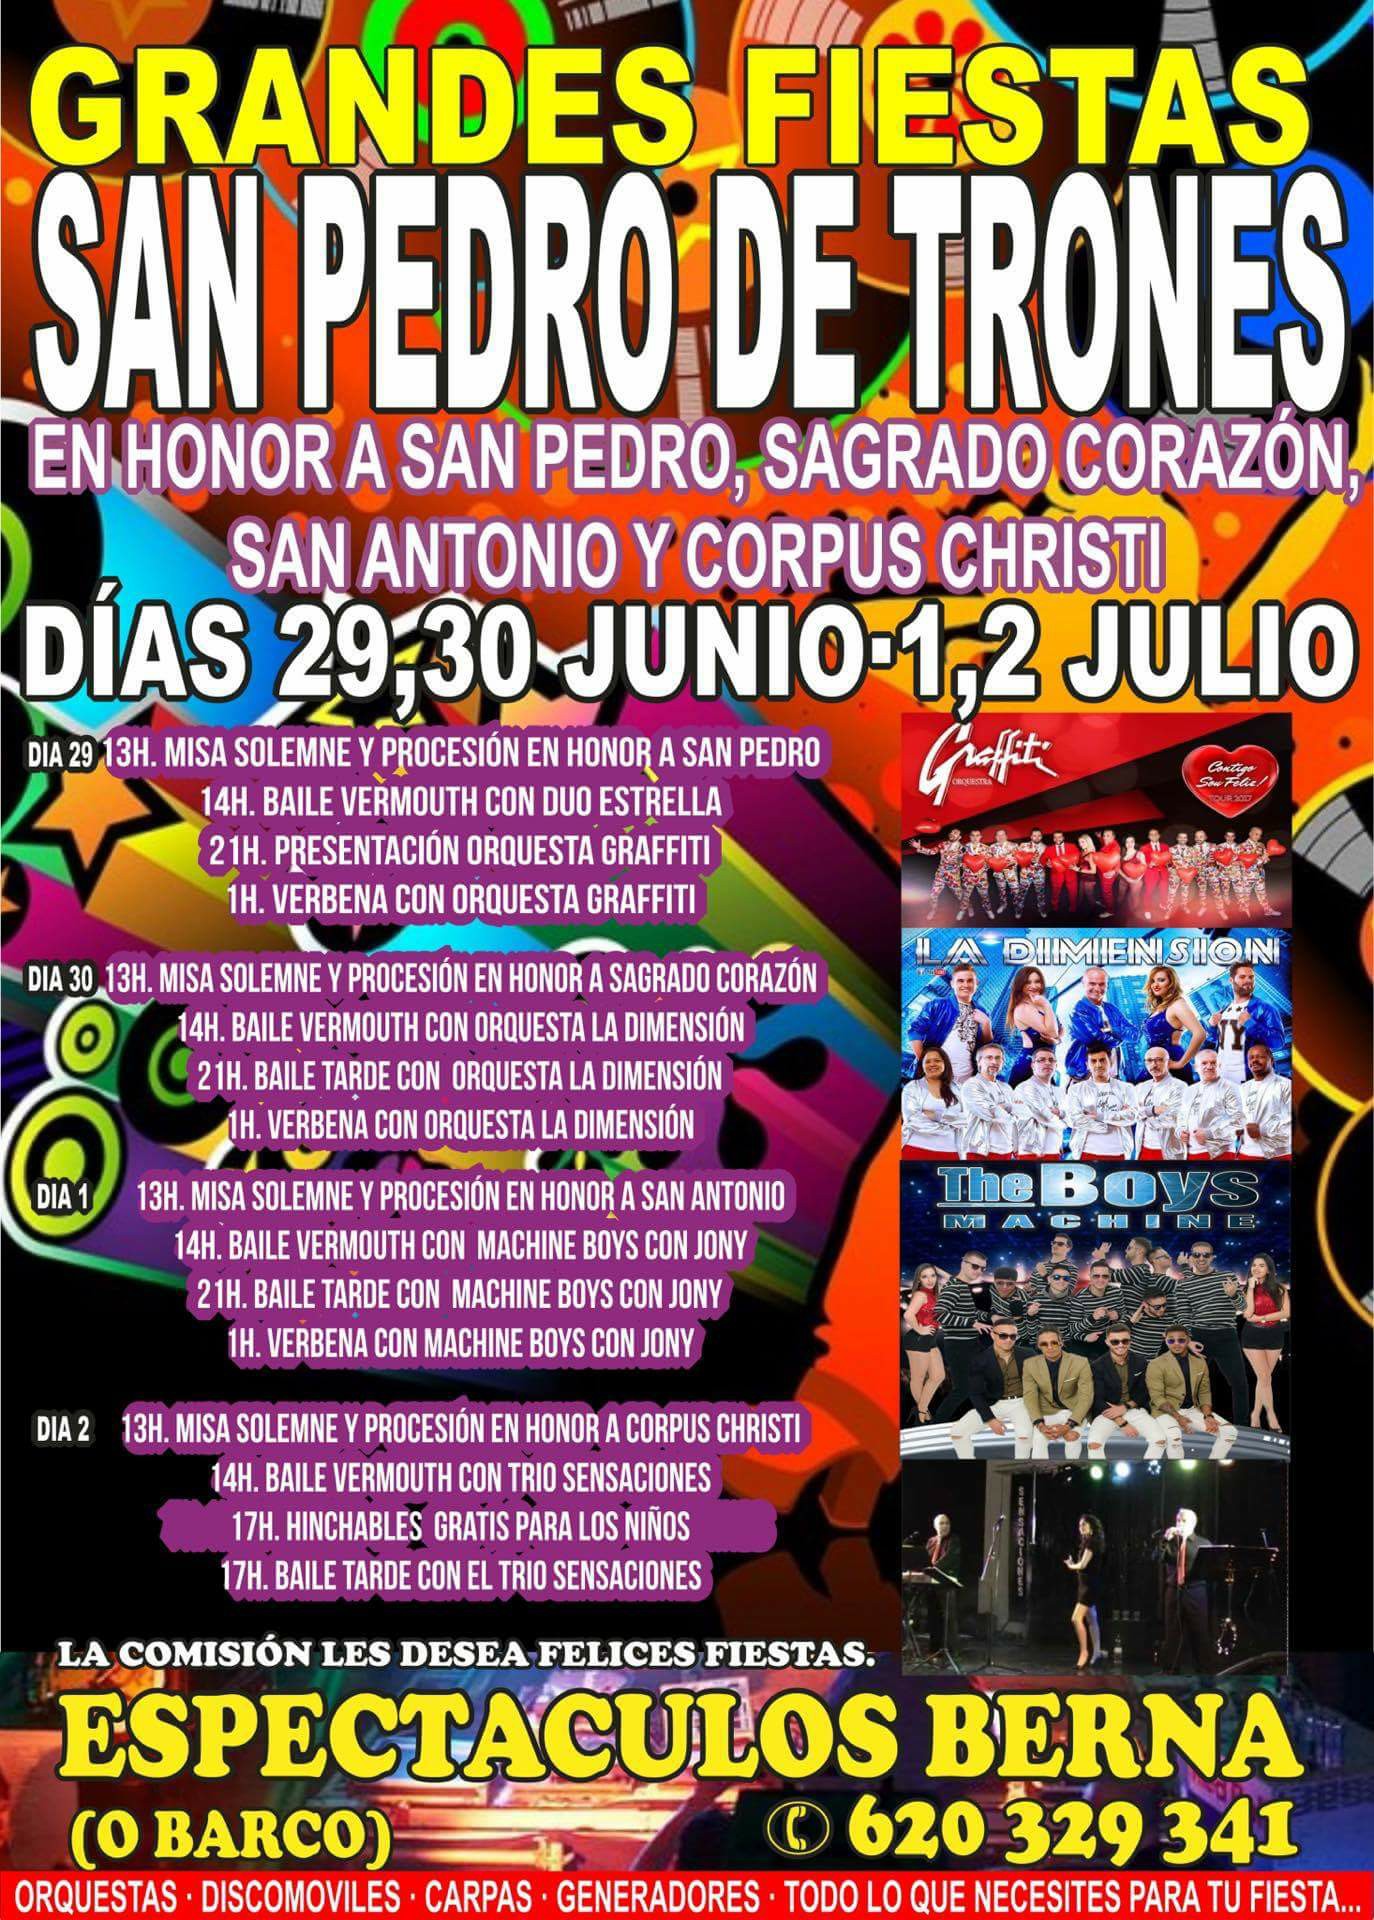 Grandes Fiestas en San Pedro de Trones 2022 en honor a San Pedro, Sagrado Corazón, San Antonio y Corpus Christi. 29 de junio al 2 de julio 2